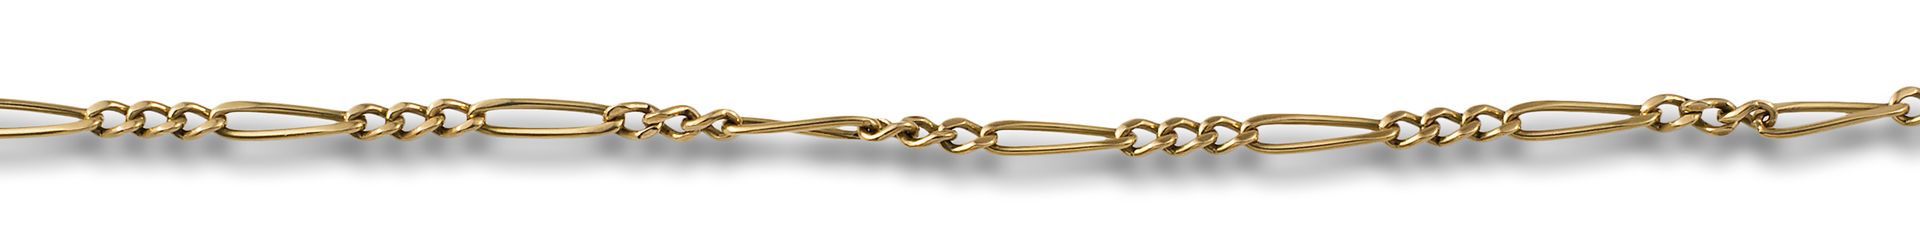 YELLOW GOLD BRACELET Durchbrochenes Gliederarmband aus 18kt Gelbgold. Gewicht: 7&hellip;